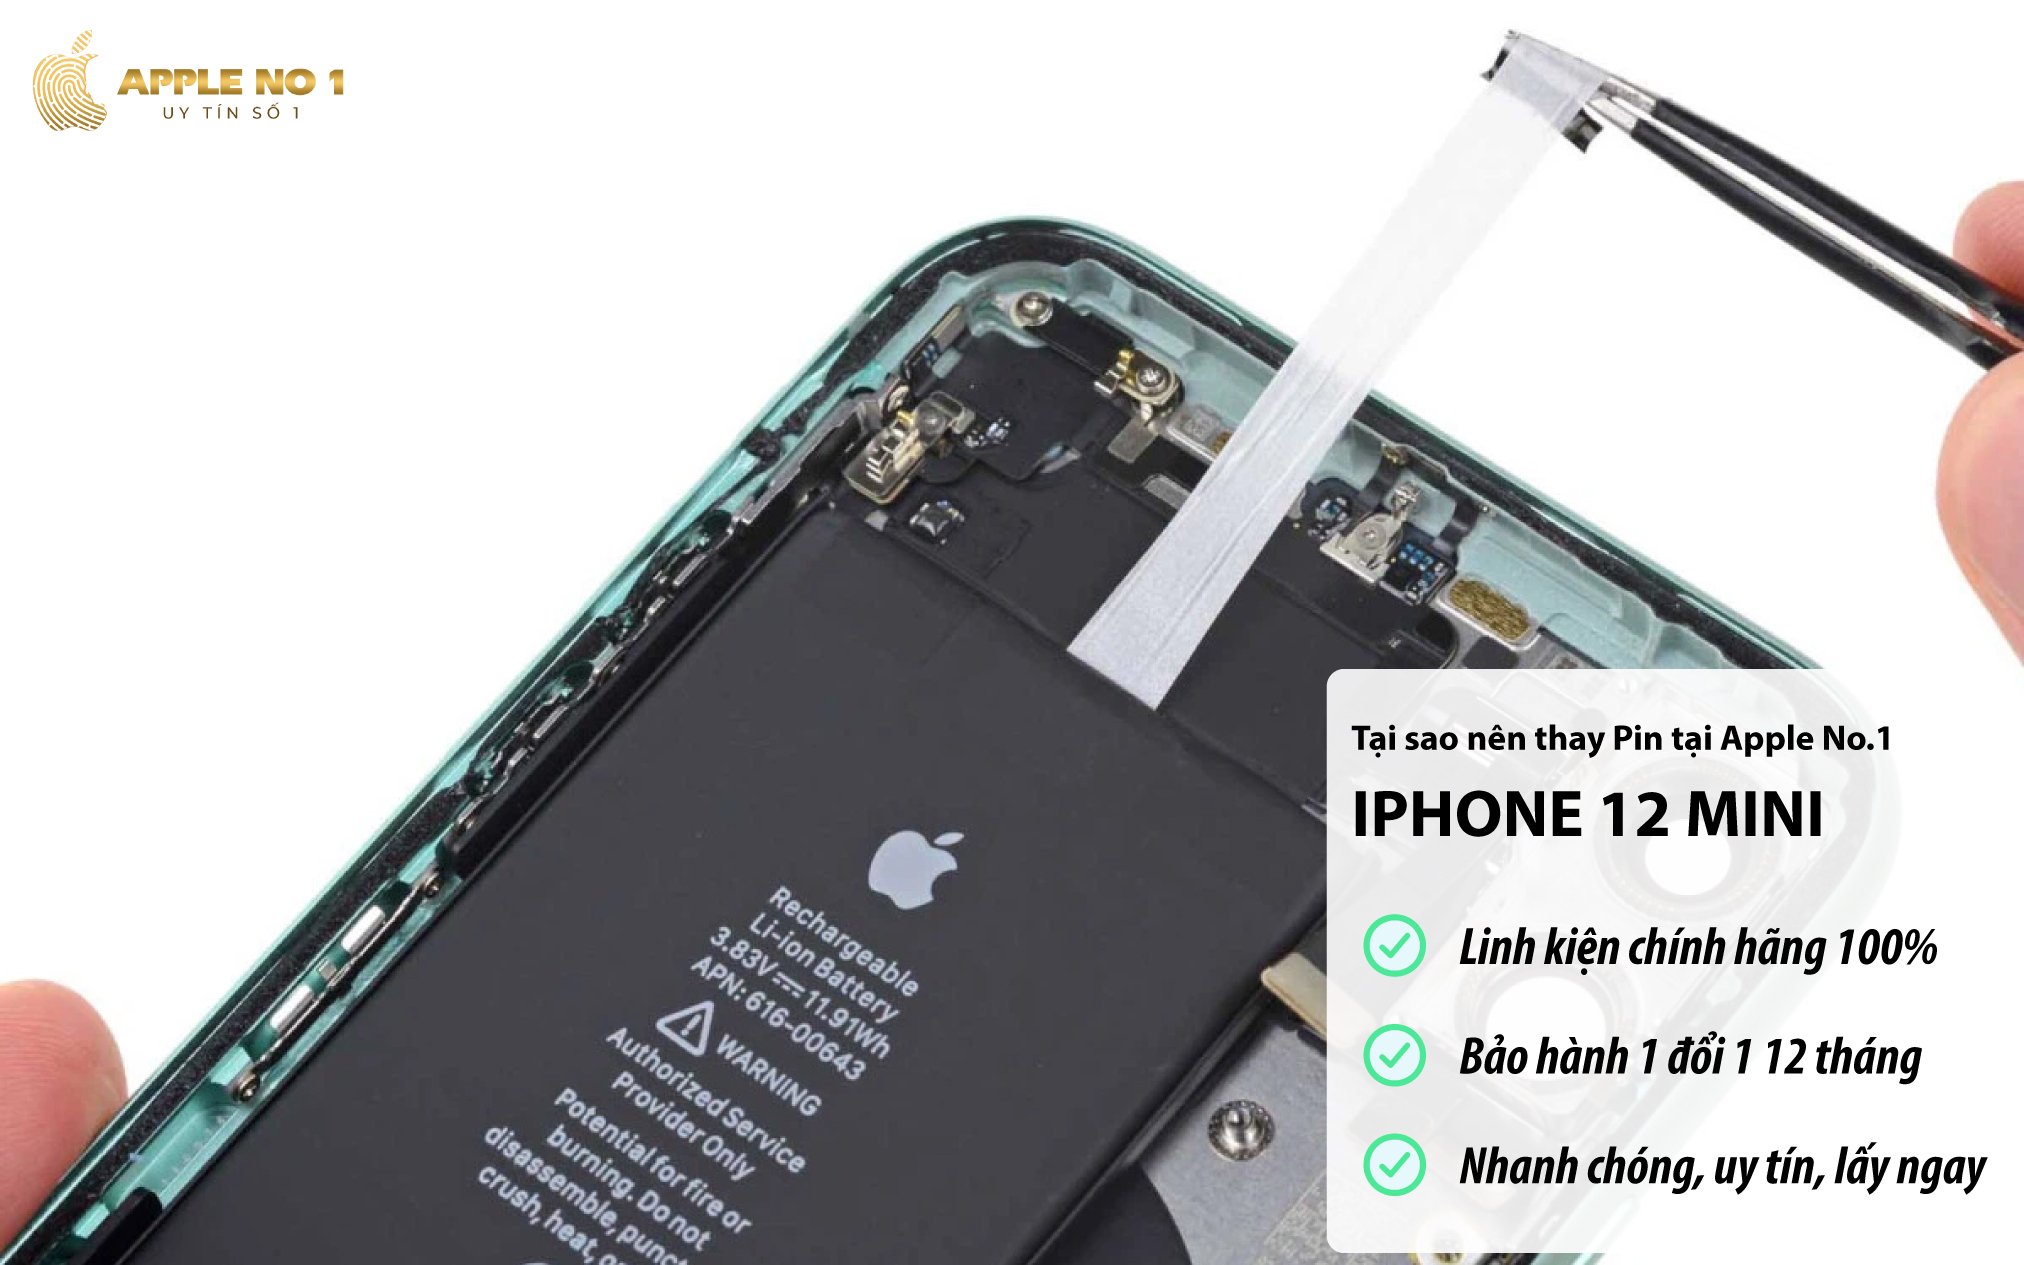 Dịch vụ thay pin iPhone 12 mini bảo hành đầy đủ, giá tốt, uy tín tại Apple No.1